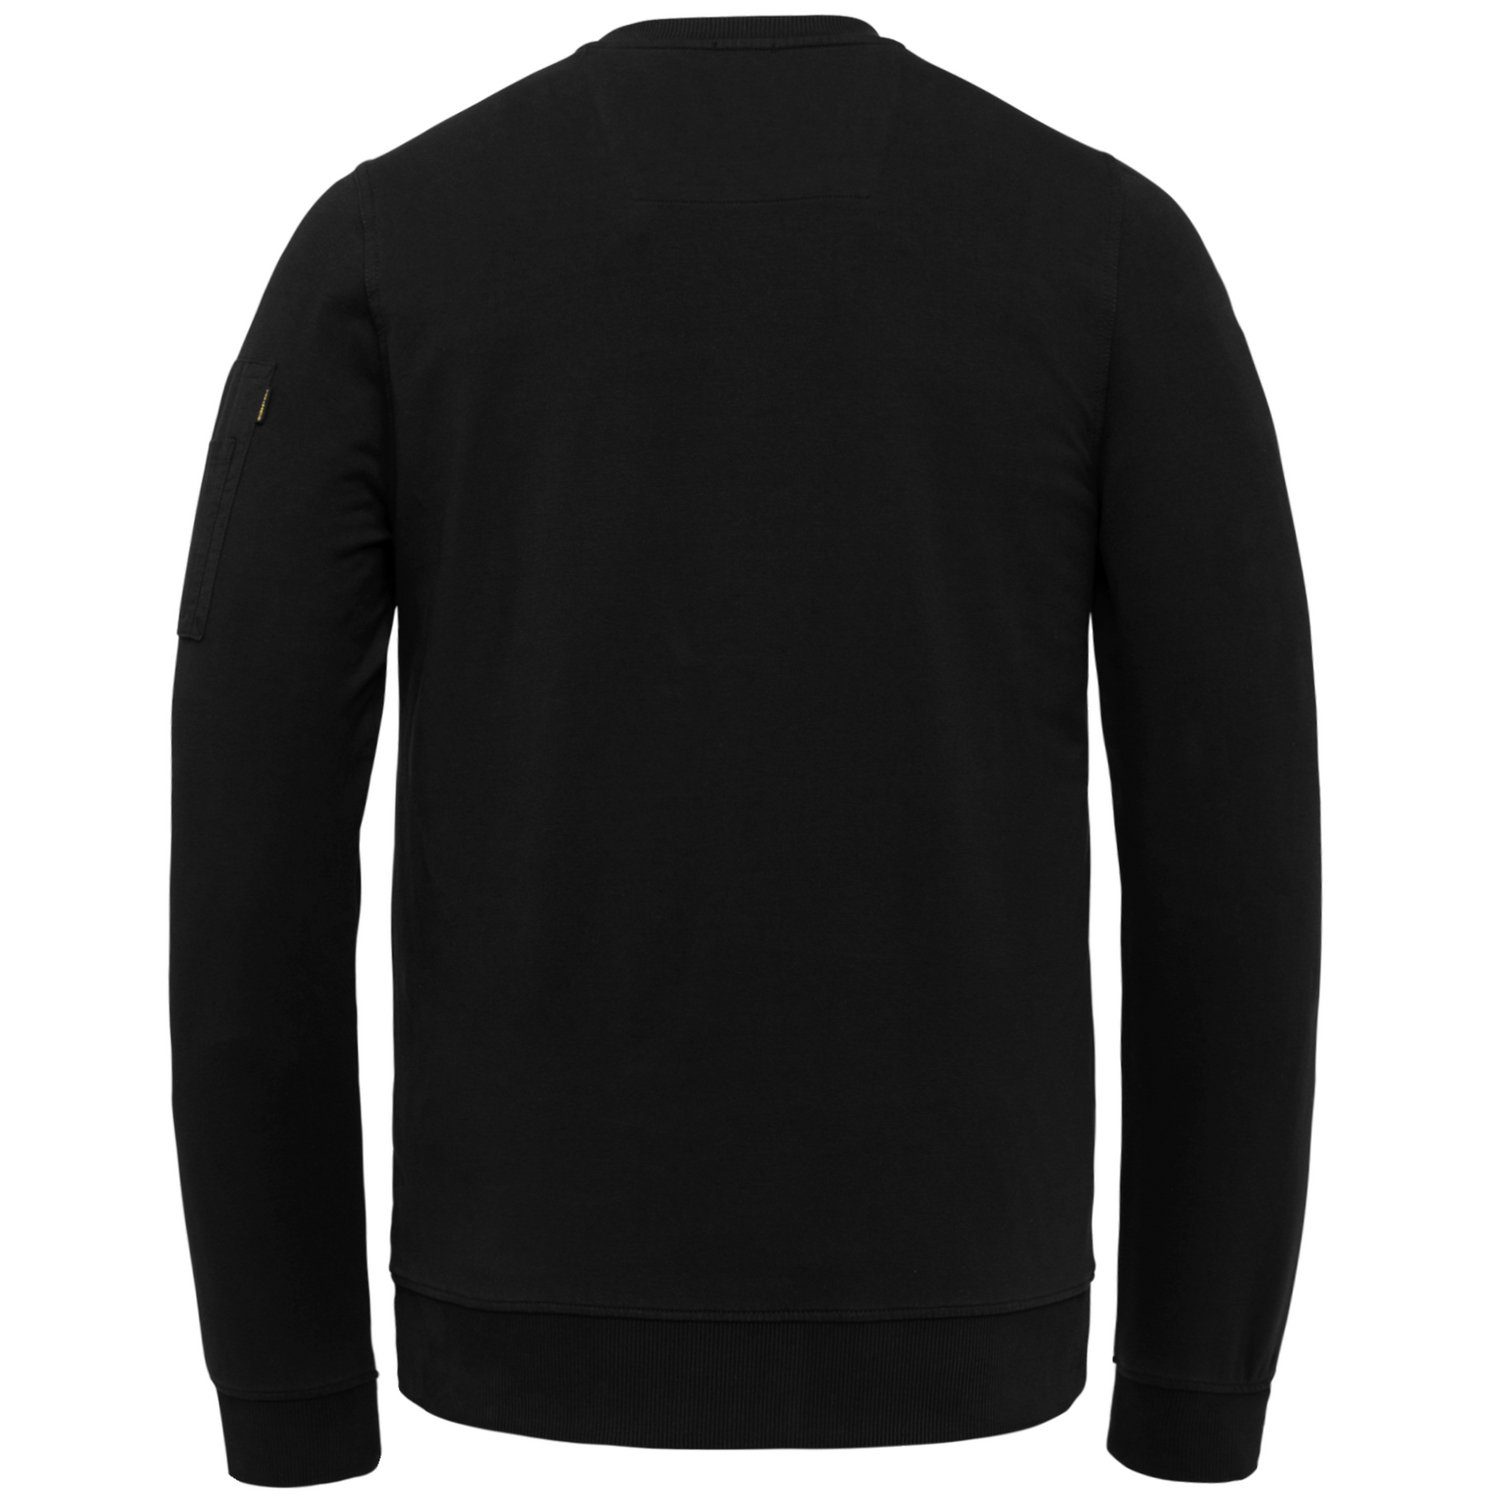 Black aus AIRSTRIP Baumwollmix 999 LEGEND PME Sweatshirt